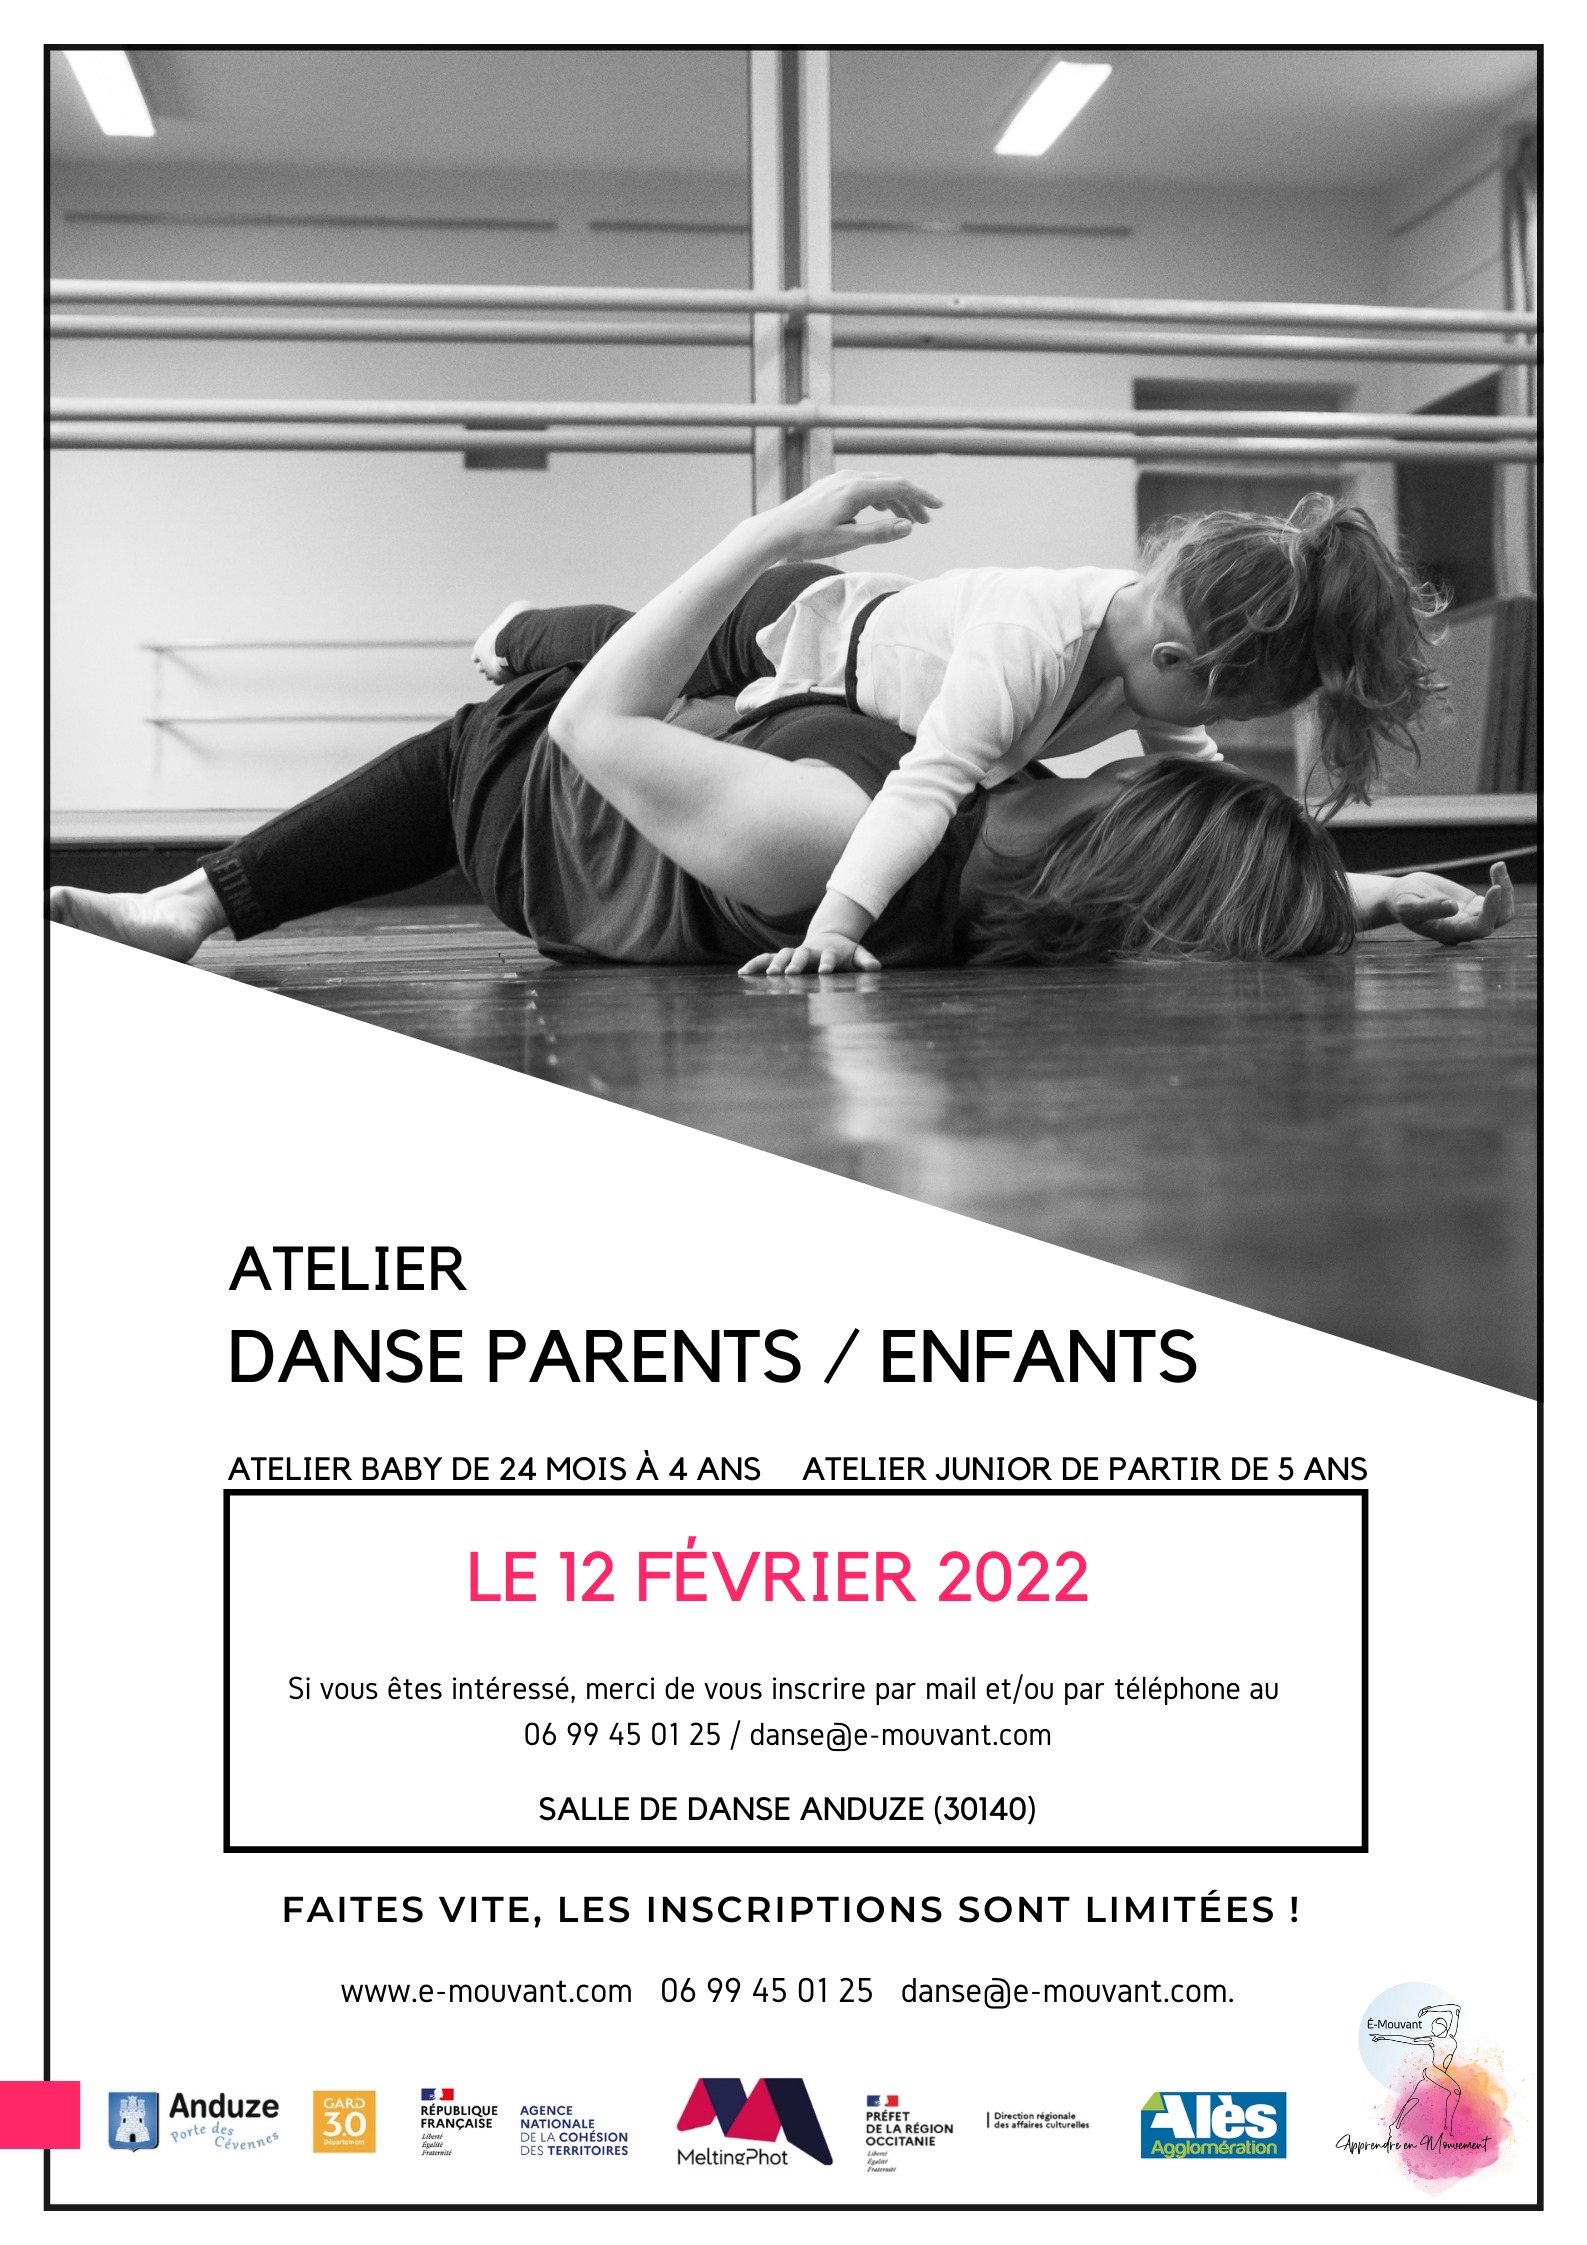 Ateliers DANSE Parents/Enfants !